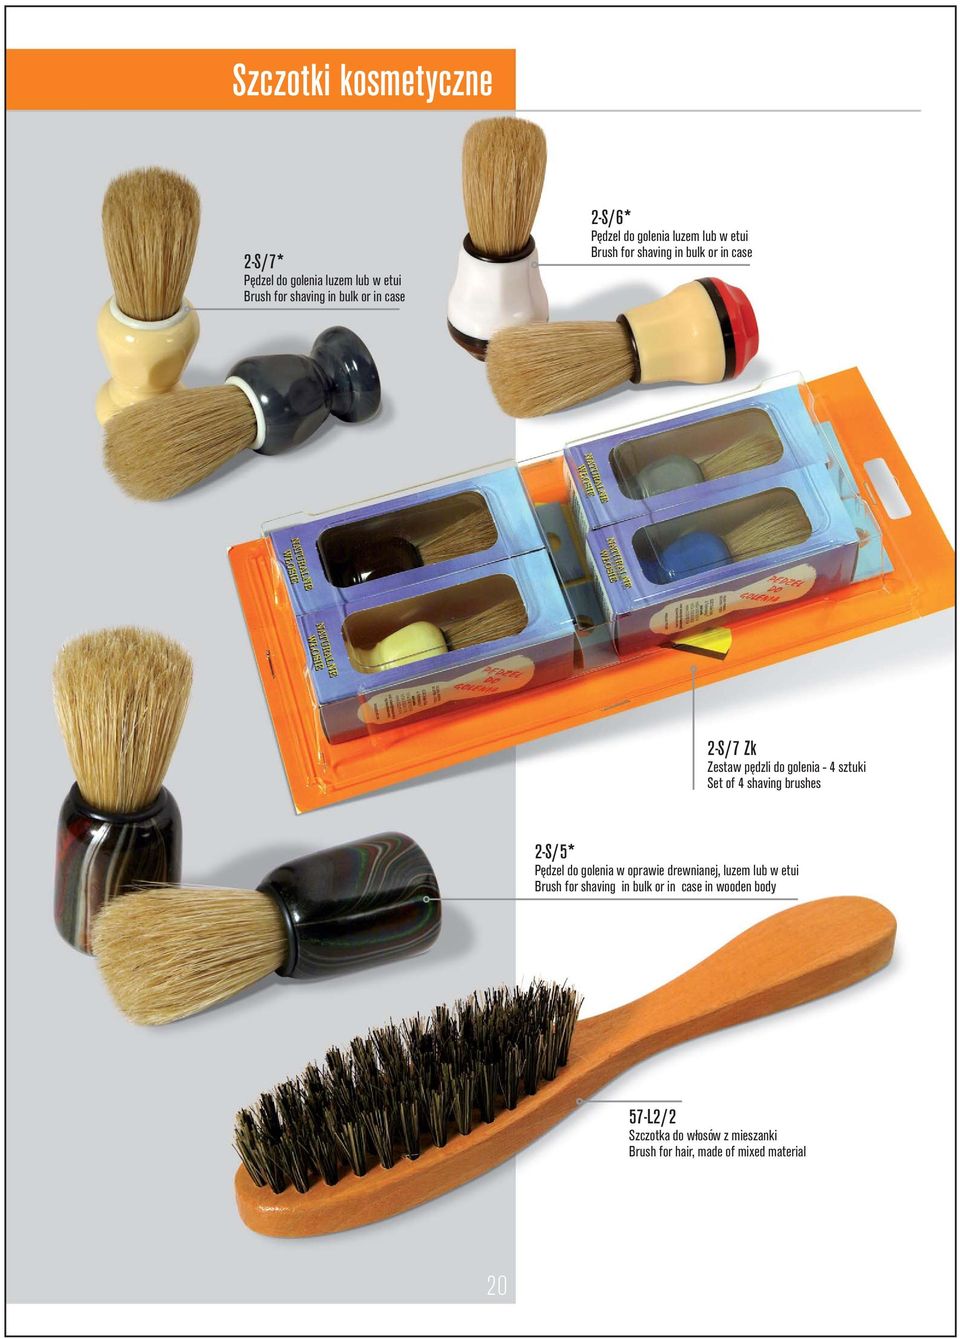 sztuki Set of 4 shaving brushes 2-S/5* Pędzel do golenia w oprawie drewnianej, luzem lub w etui Brush for